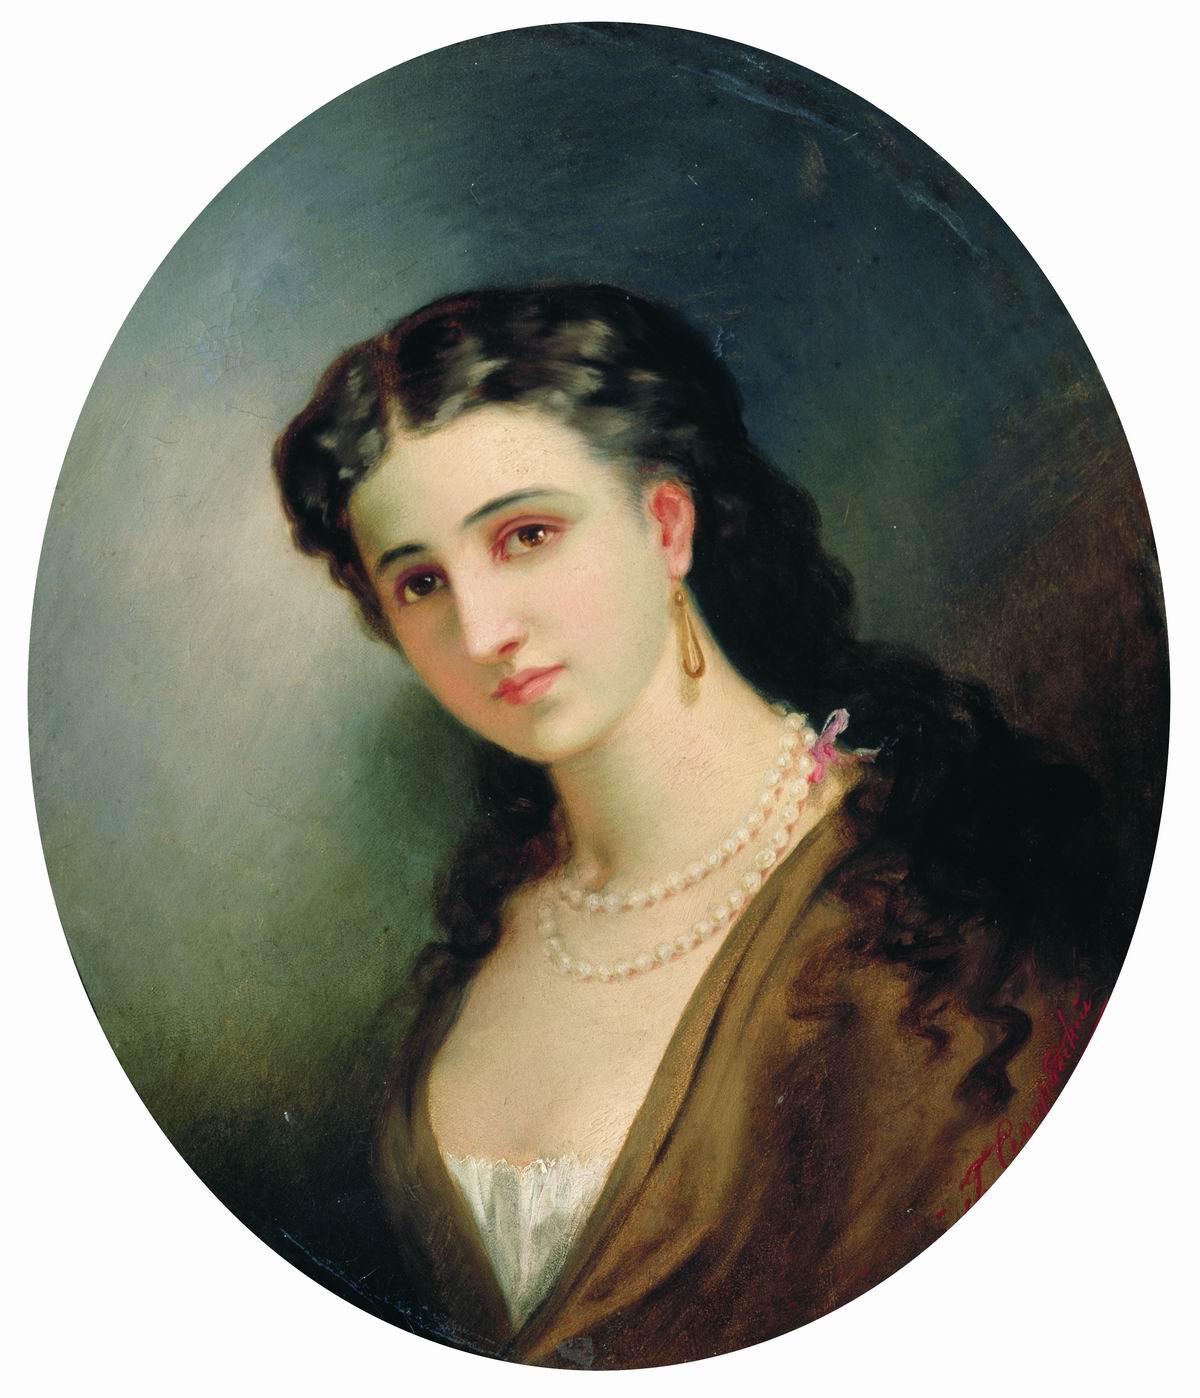 Семирадский. Женский портрет. 1866